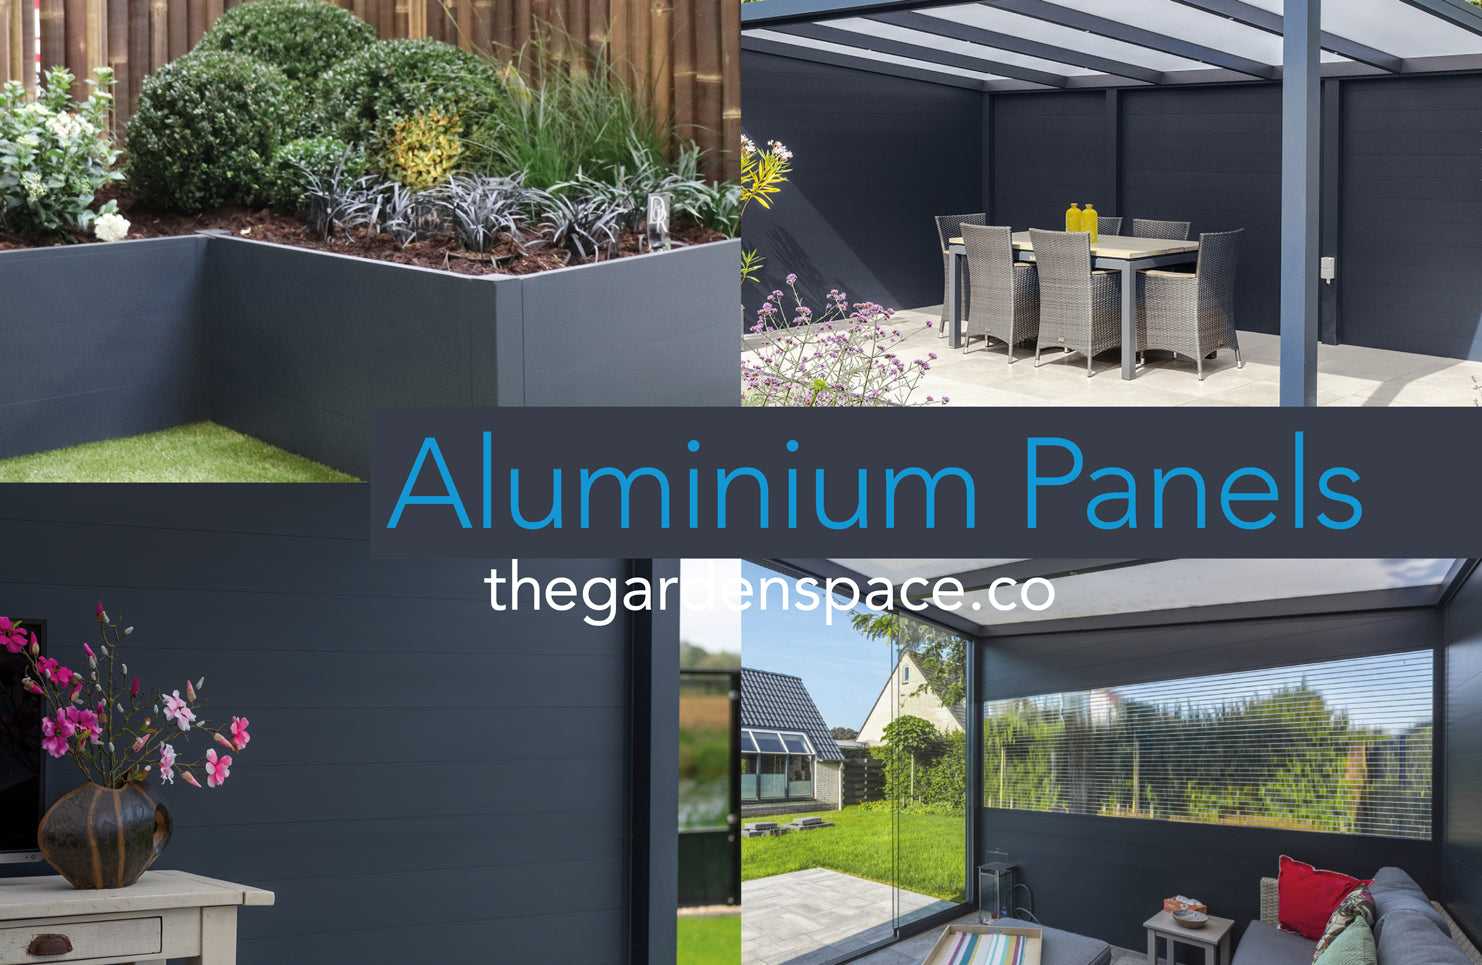 Aluminium Panel System - thegardenspace.co